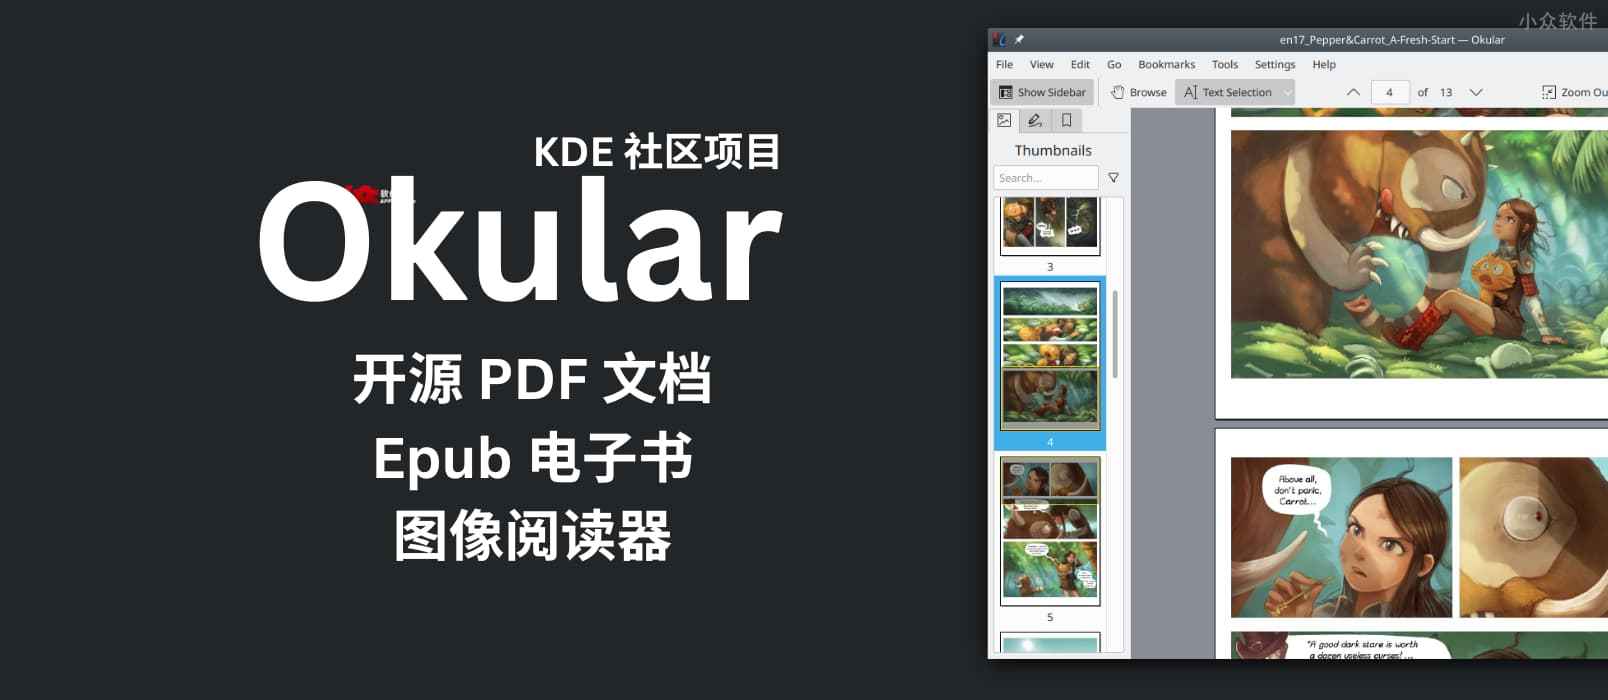 Okular -  开源 PDF 文档、Epub 电子书，图像阅读器[Windows/Linux] 